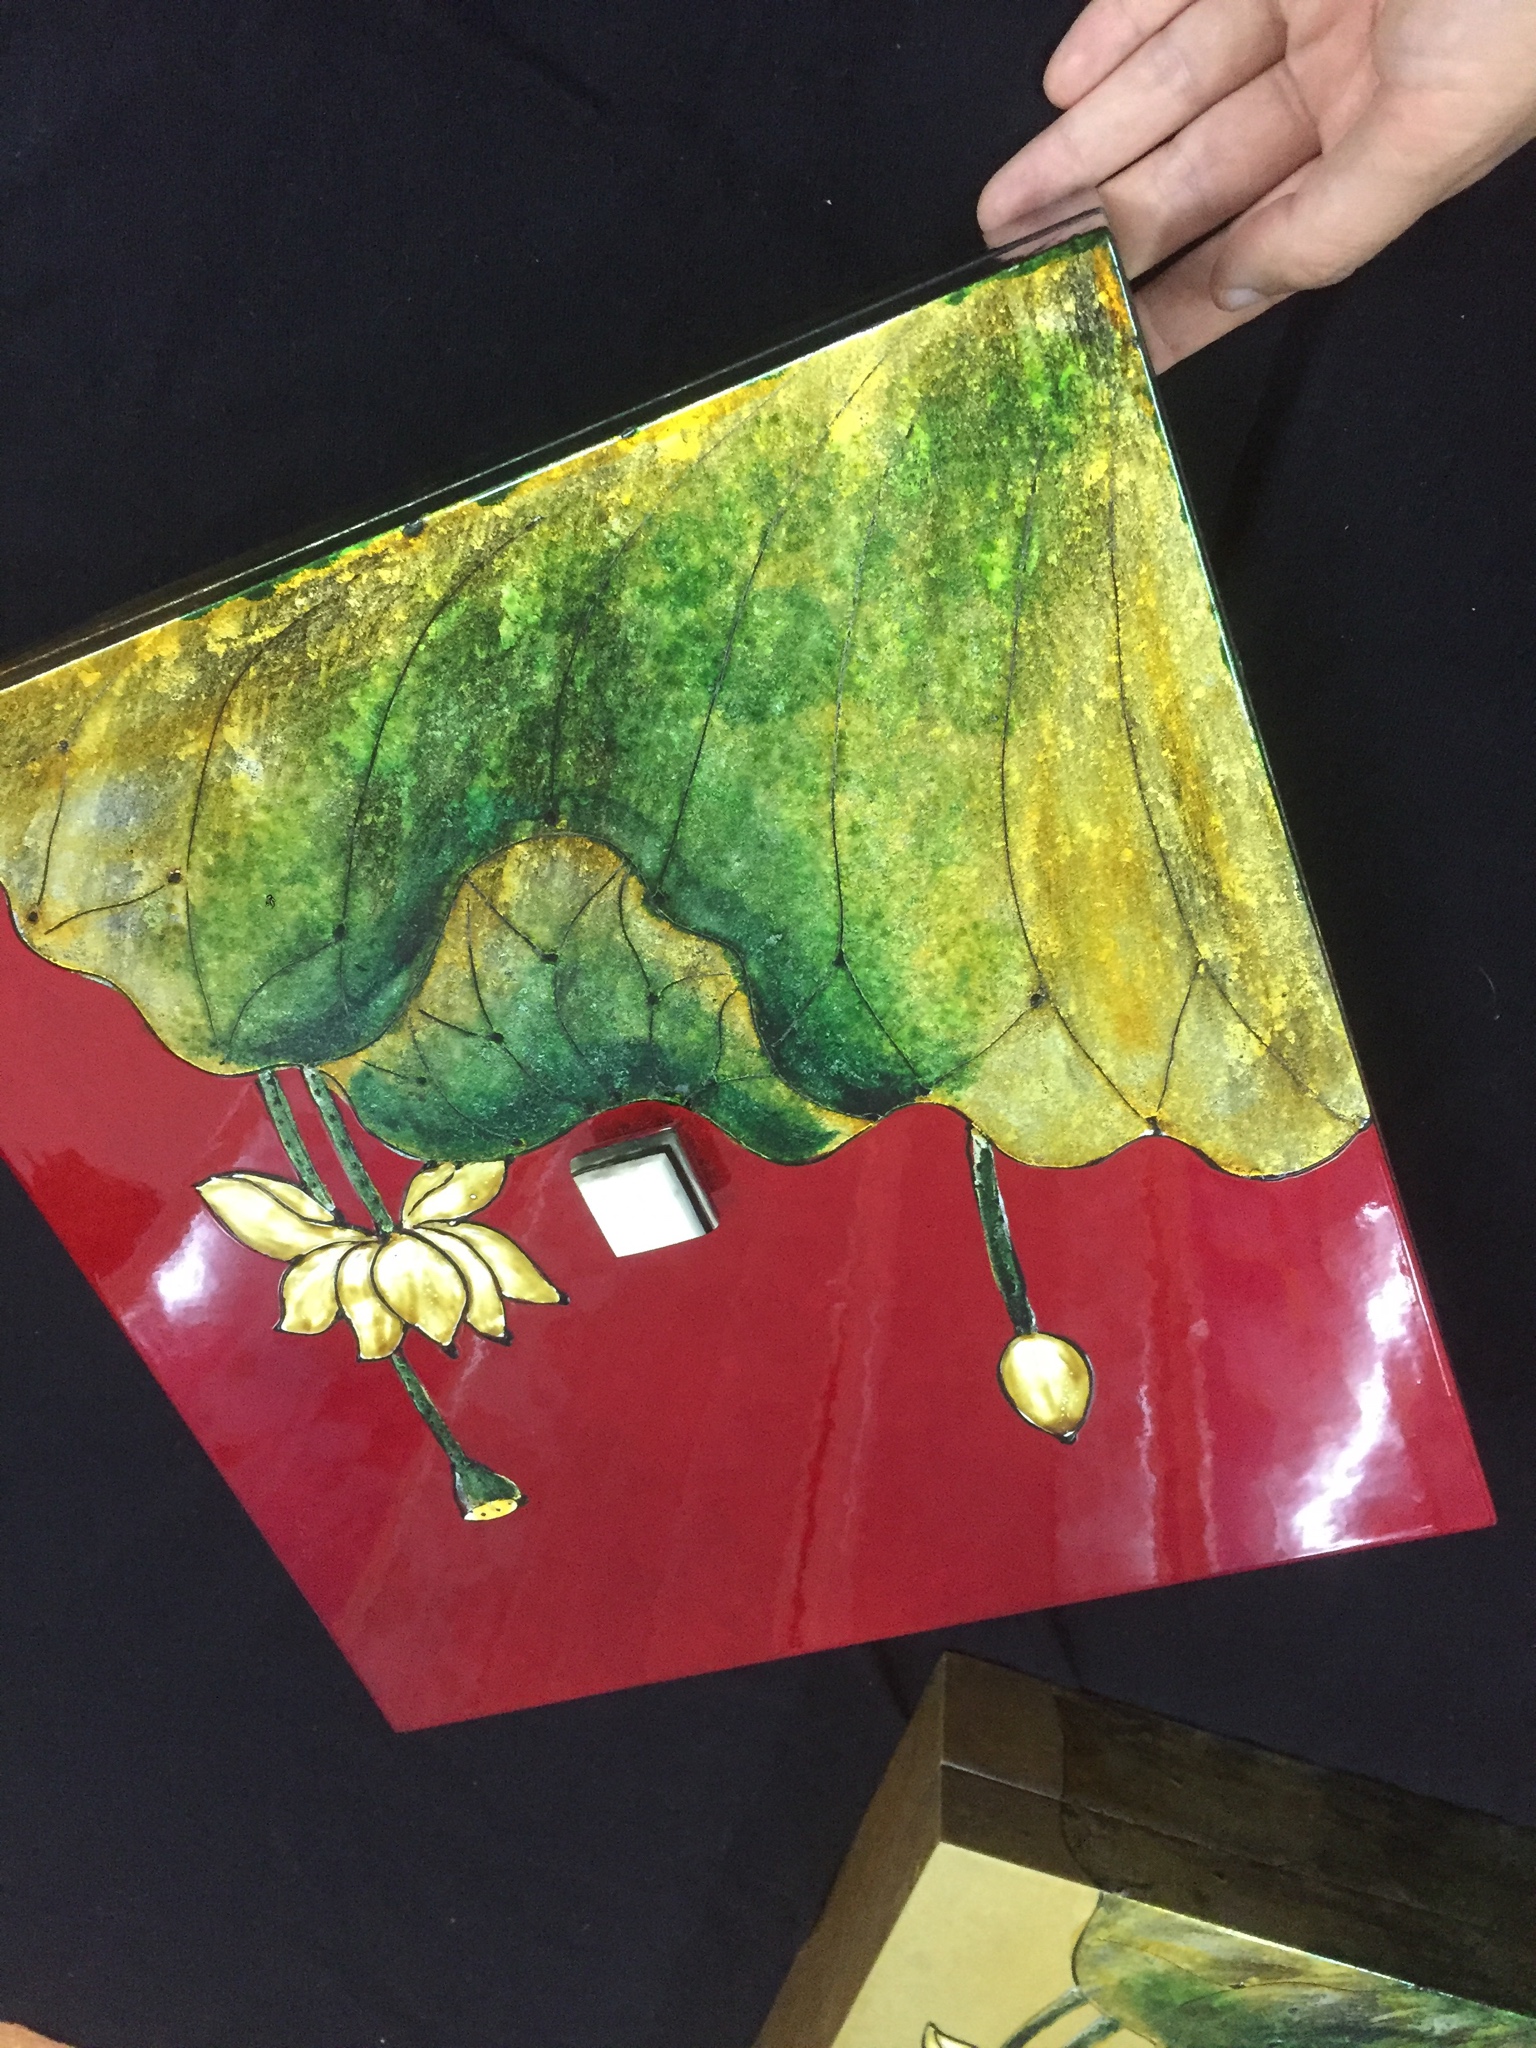 Hộp Mứt Sơn Mài Mỹ Nghệ Vuông 30cm x 30cm -Vẽ hoa sen (hình thật -Sản phẩm làm kỹ )